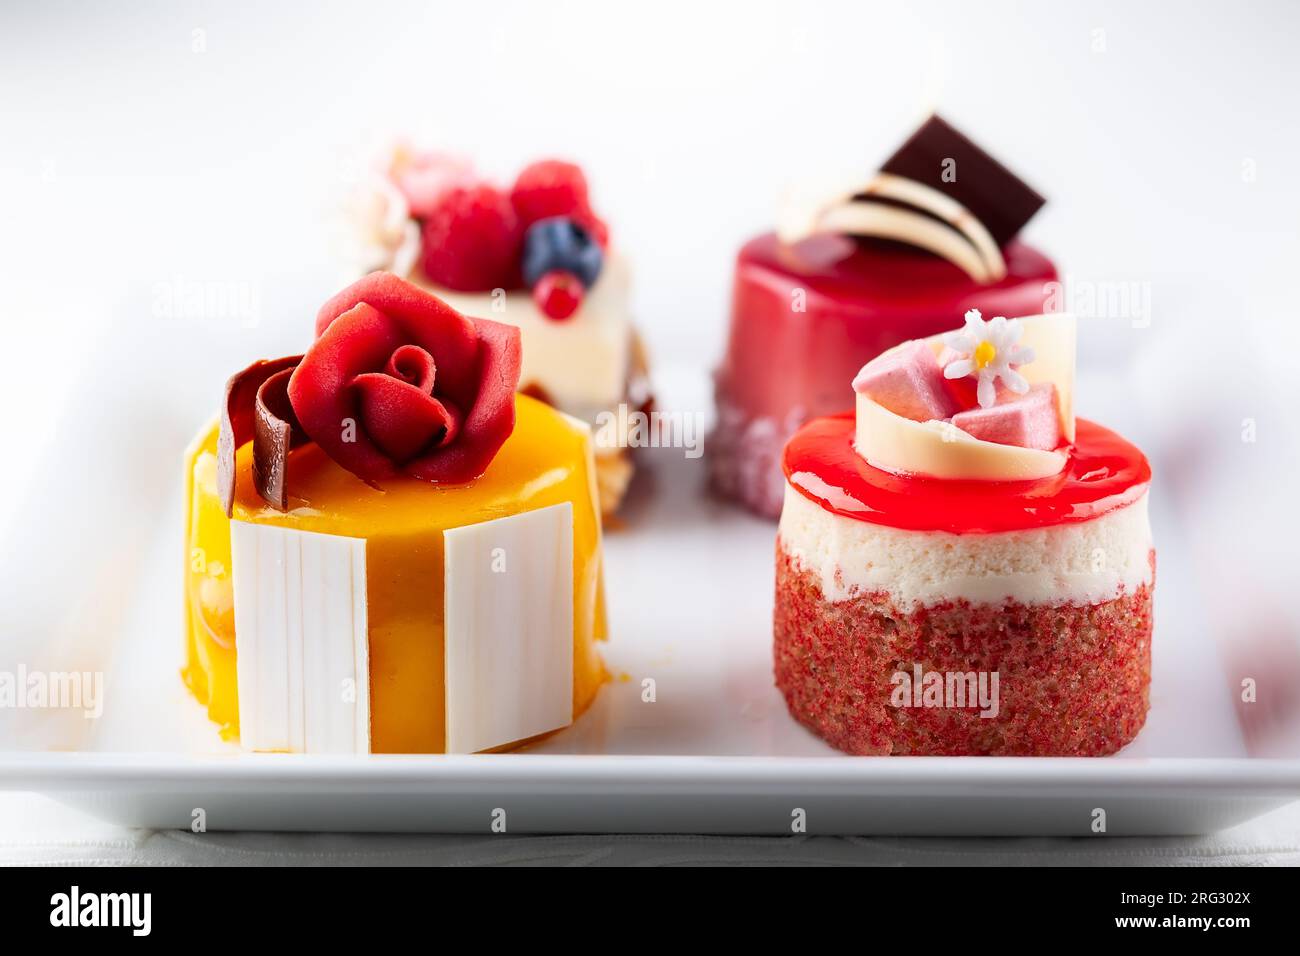 Varie mini torte su un piatto bianco. Dolci decorati con frutti di bosco freschi e fiori per le vacanze. Foto Stock